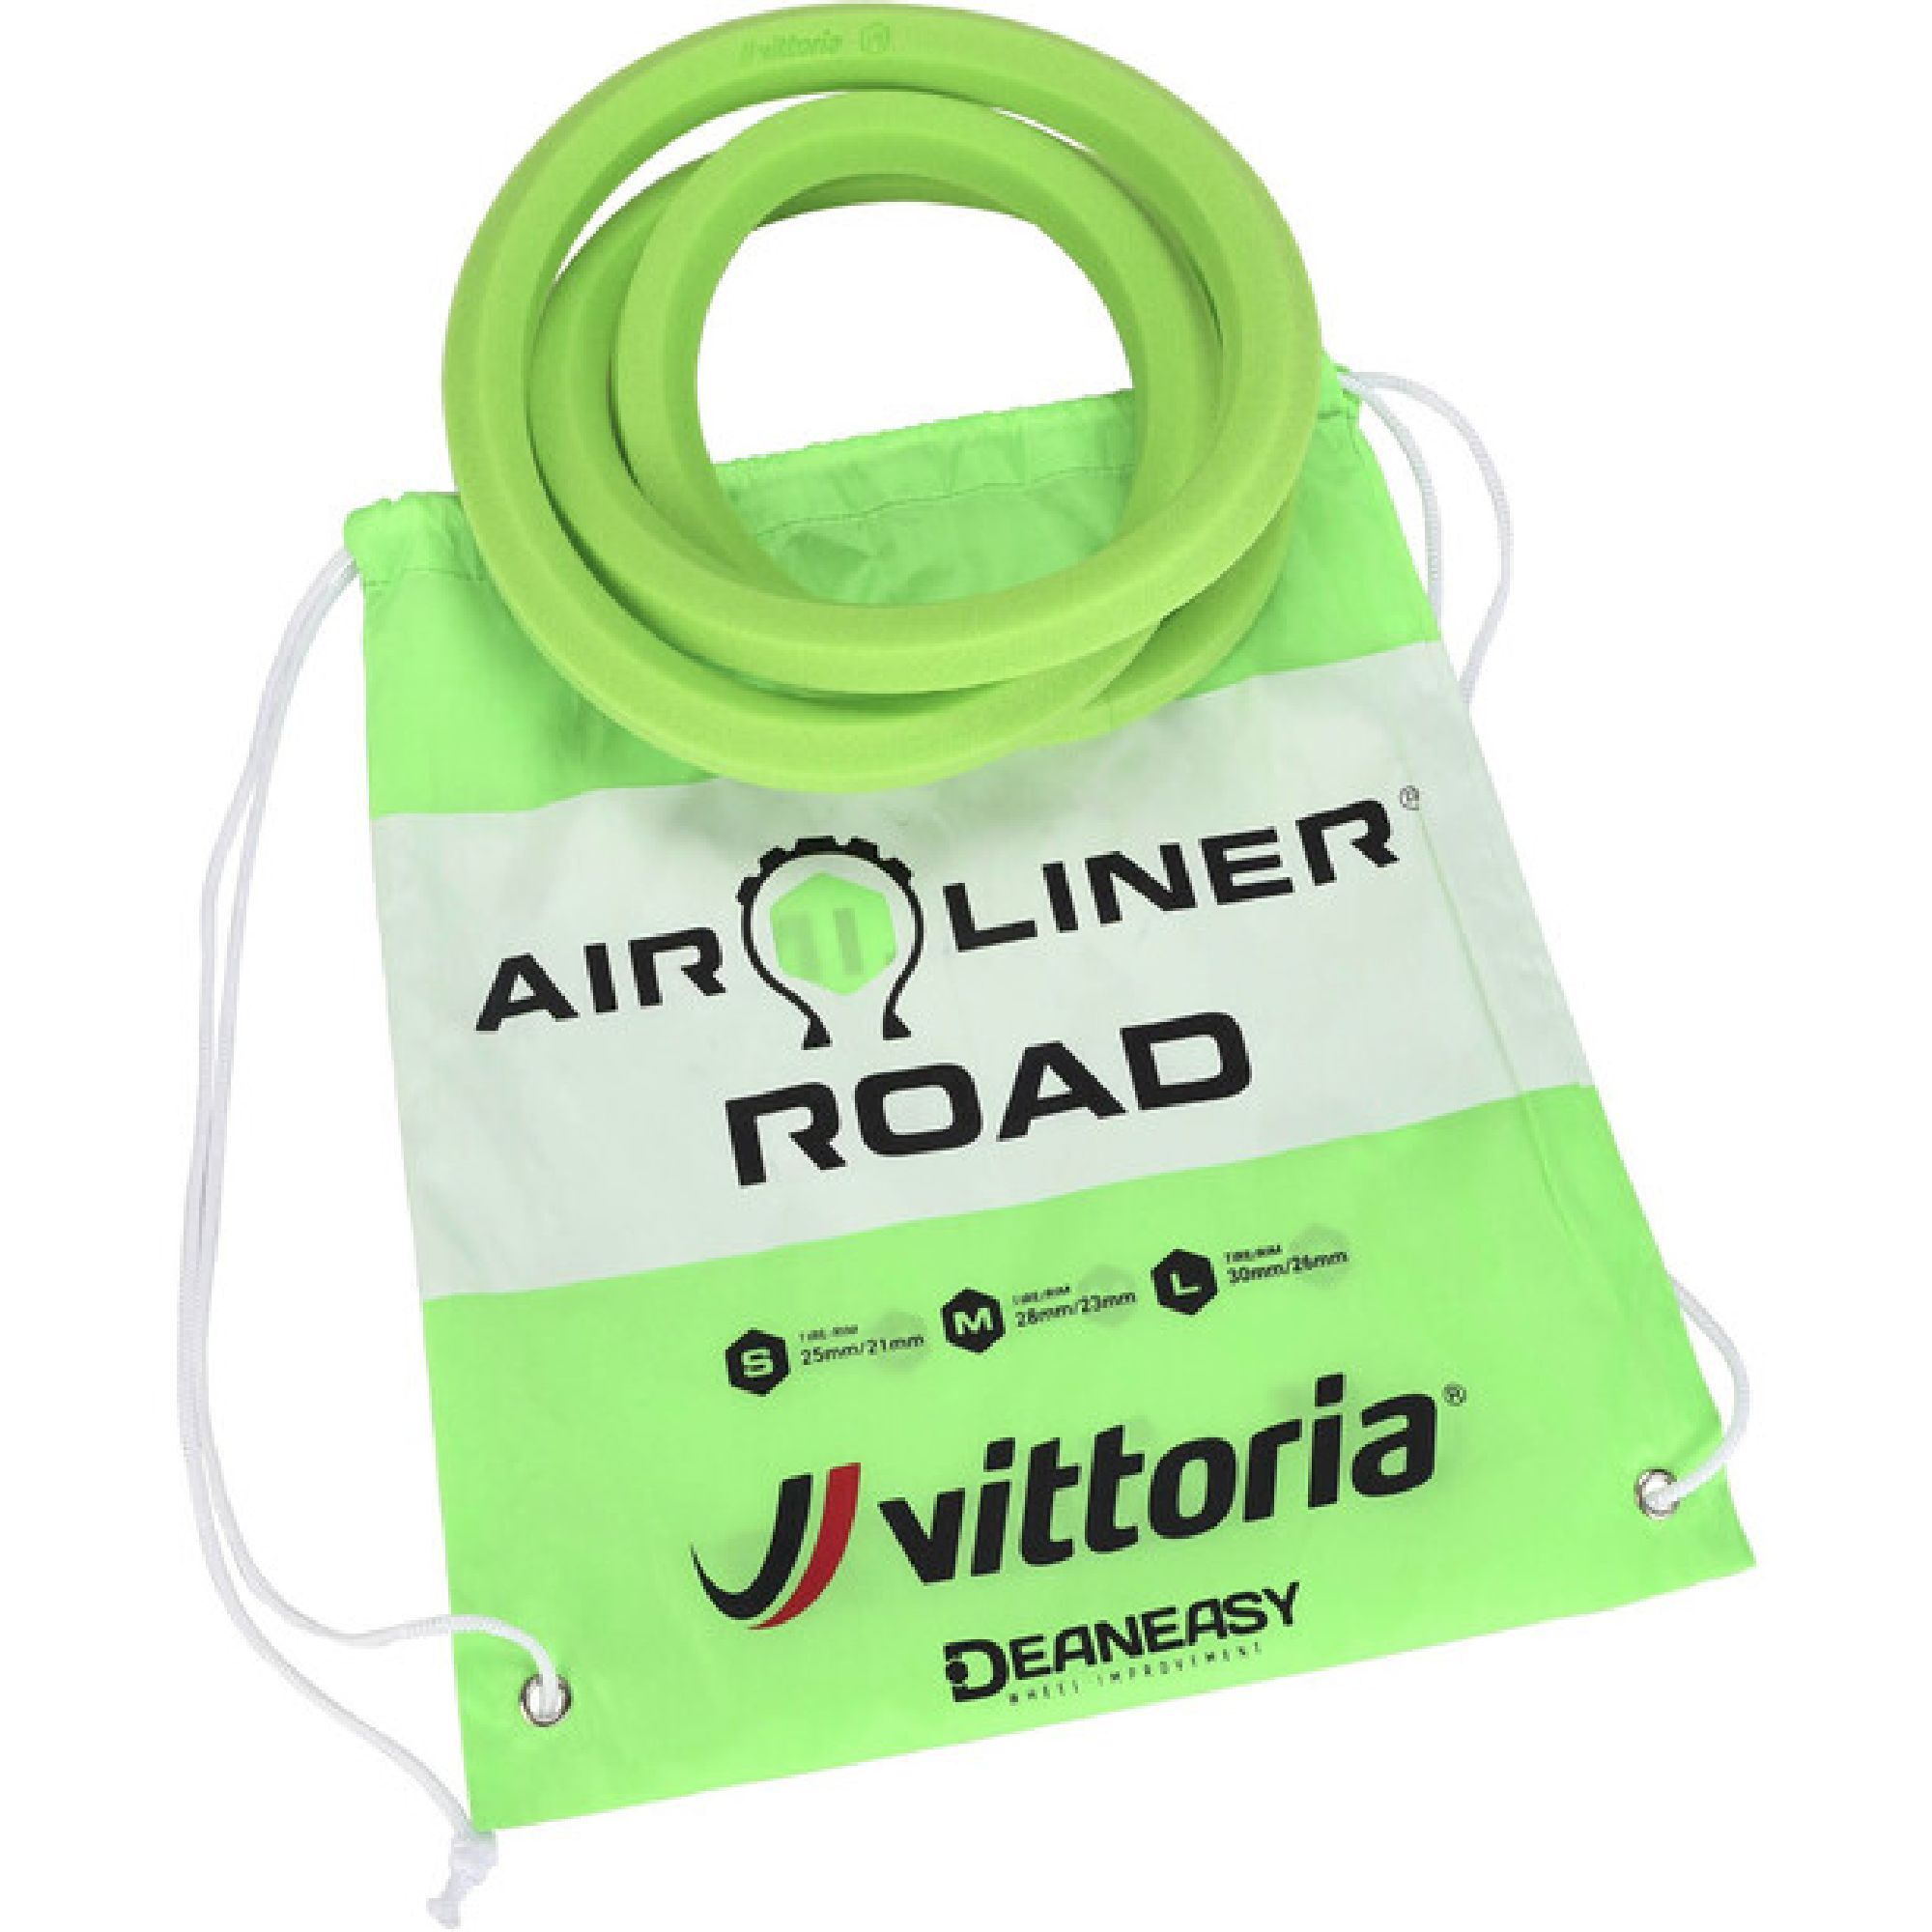 Vittoria Air-Liner Road - Durchschlagschutz | Hardloop